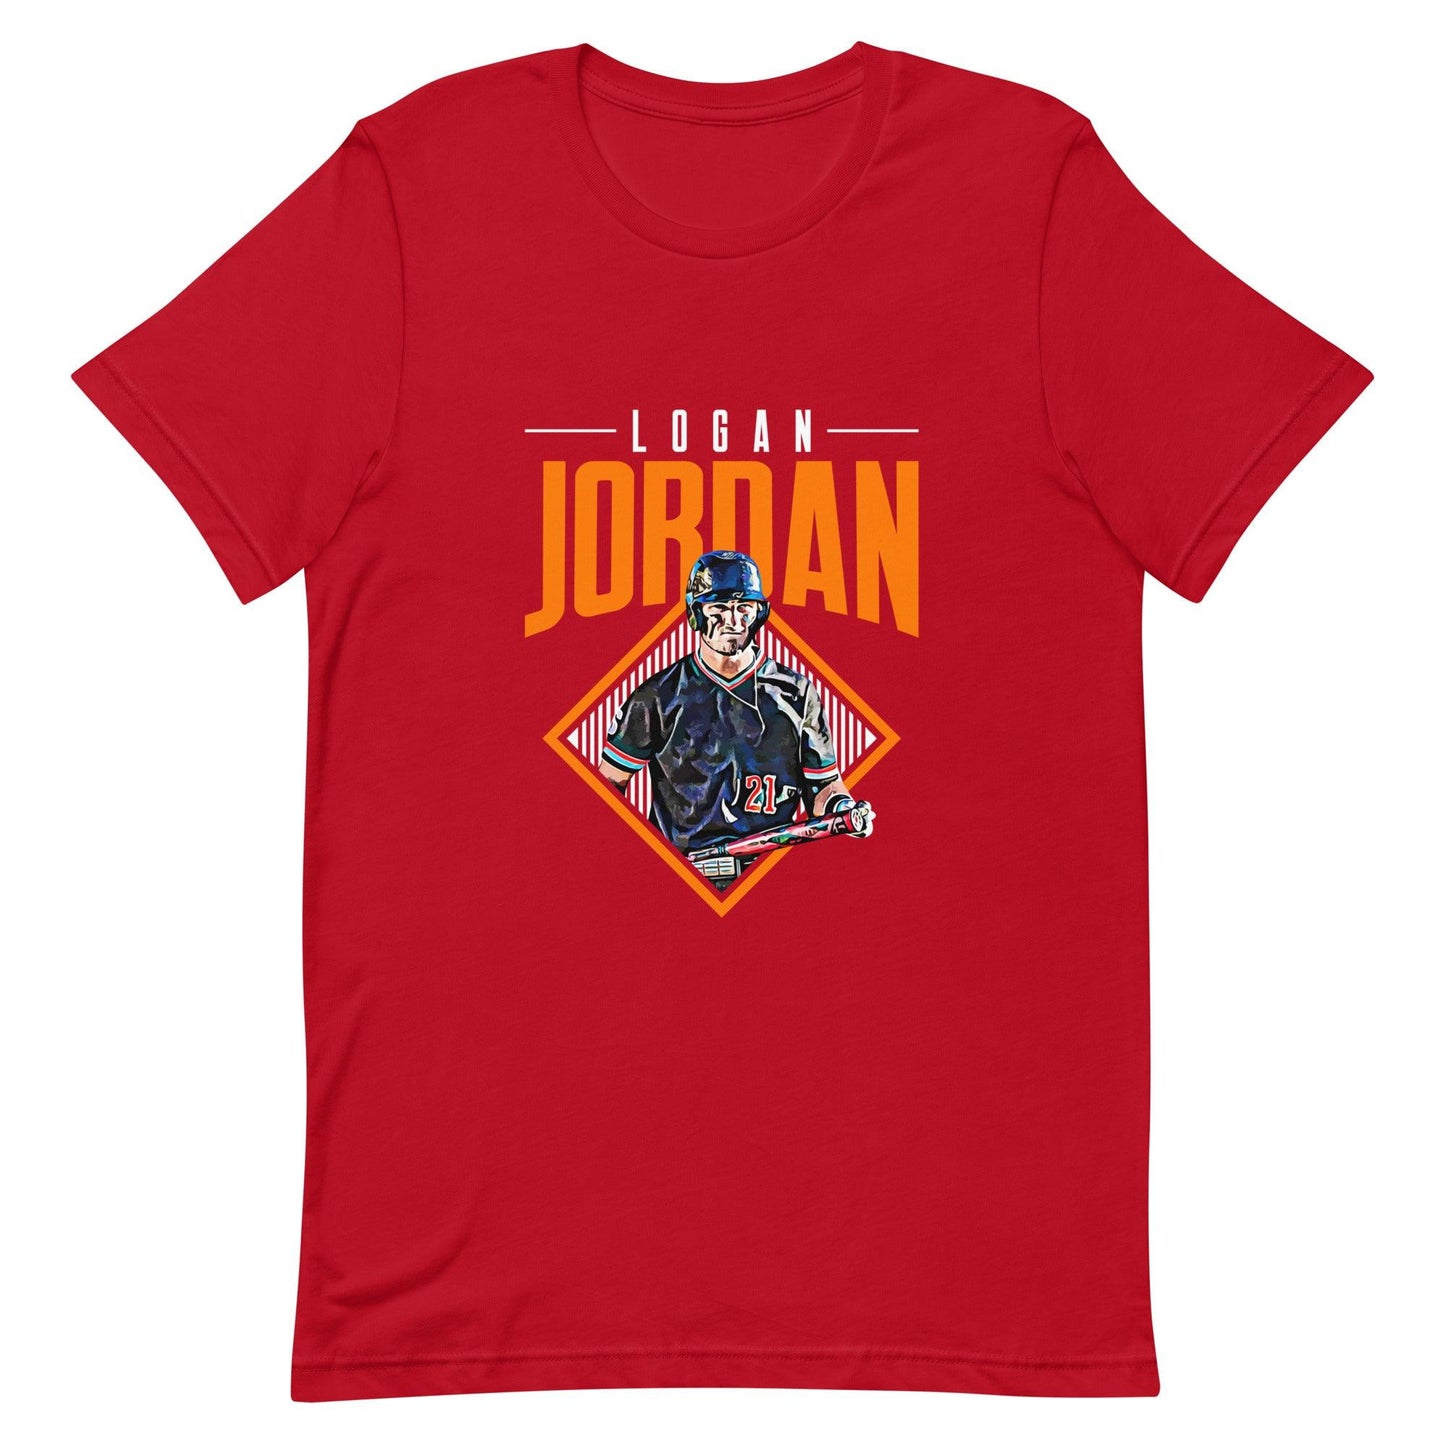 Logan Jordan "Grand Slam" t-shirt - Fan Arch